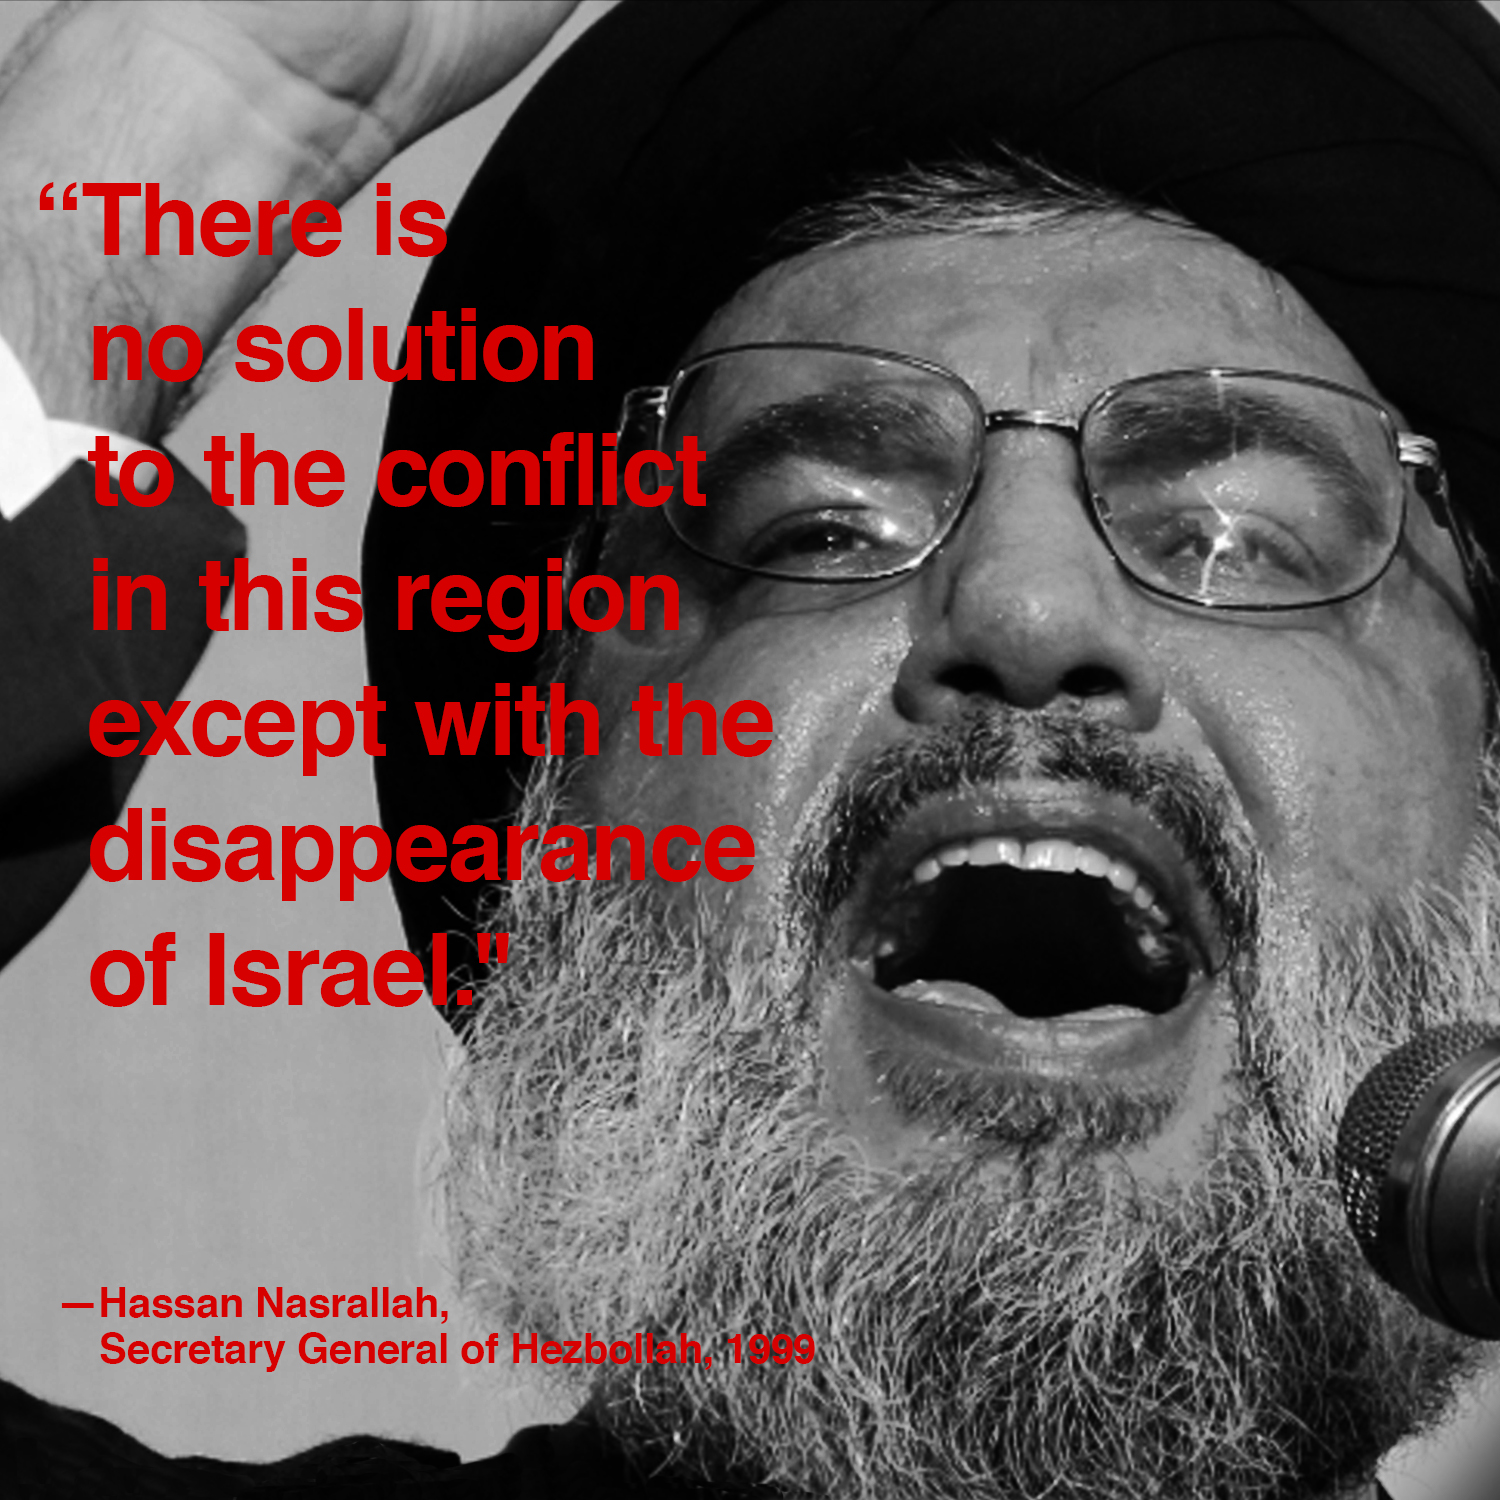 Hassan Nasrallah's quote #4